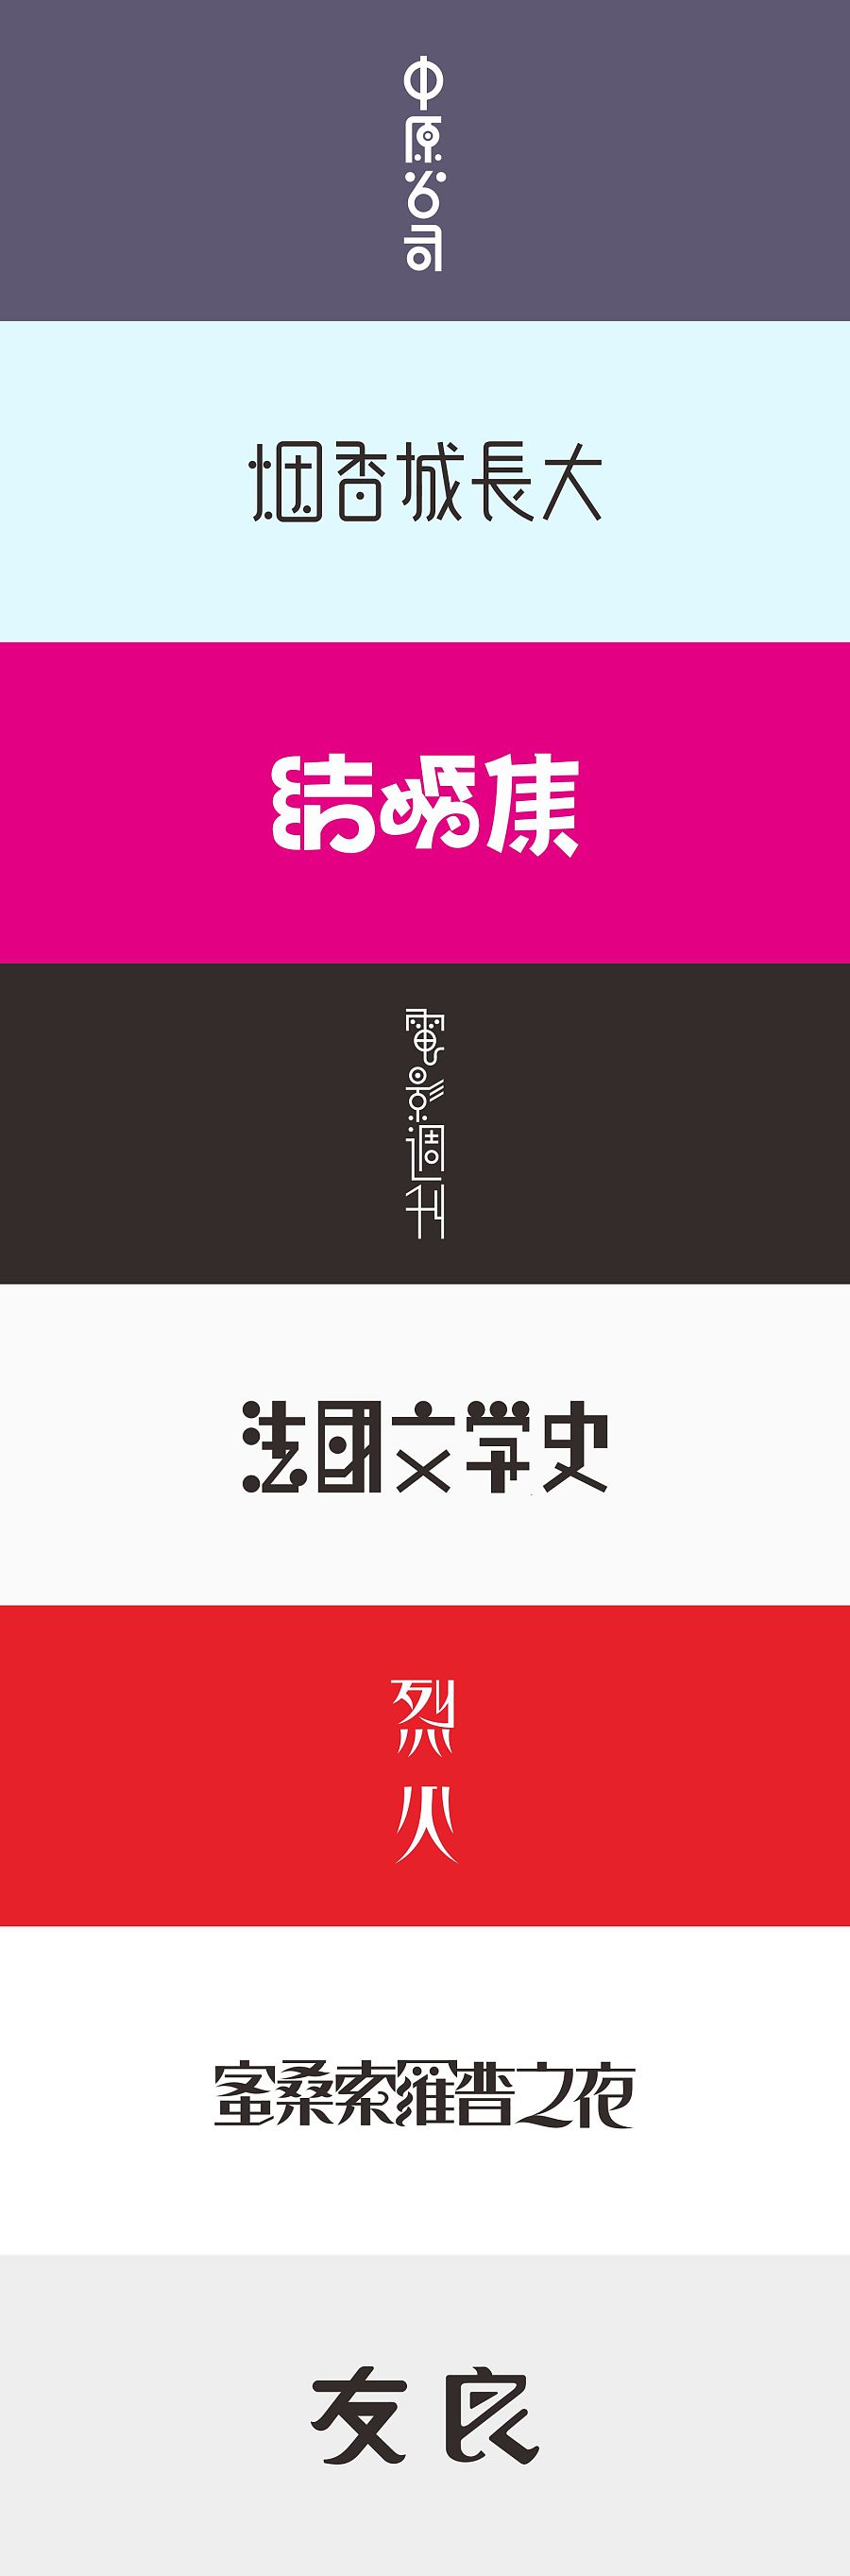 China TDC | Chinese modern art font design